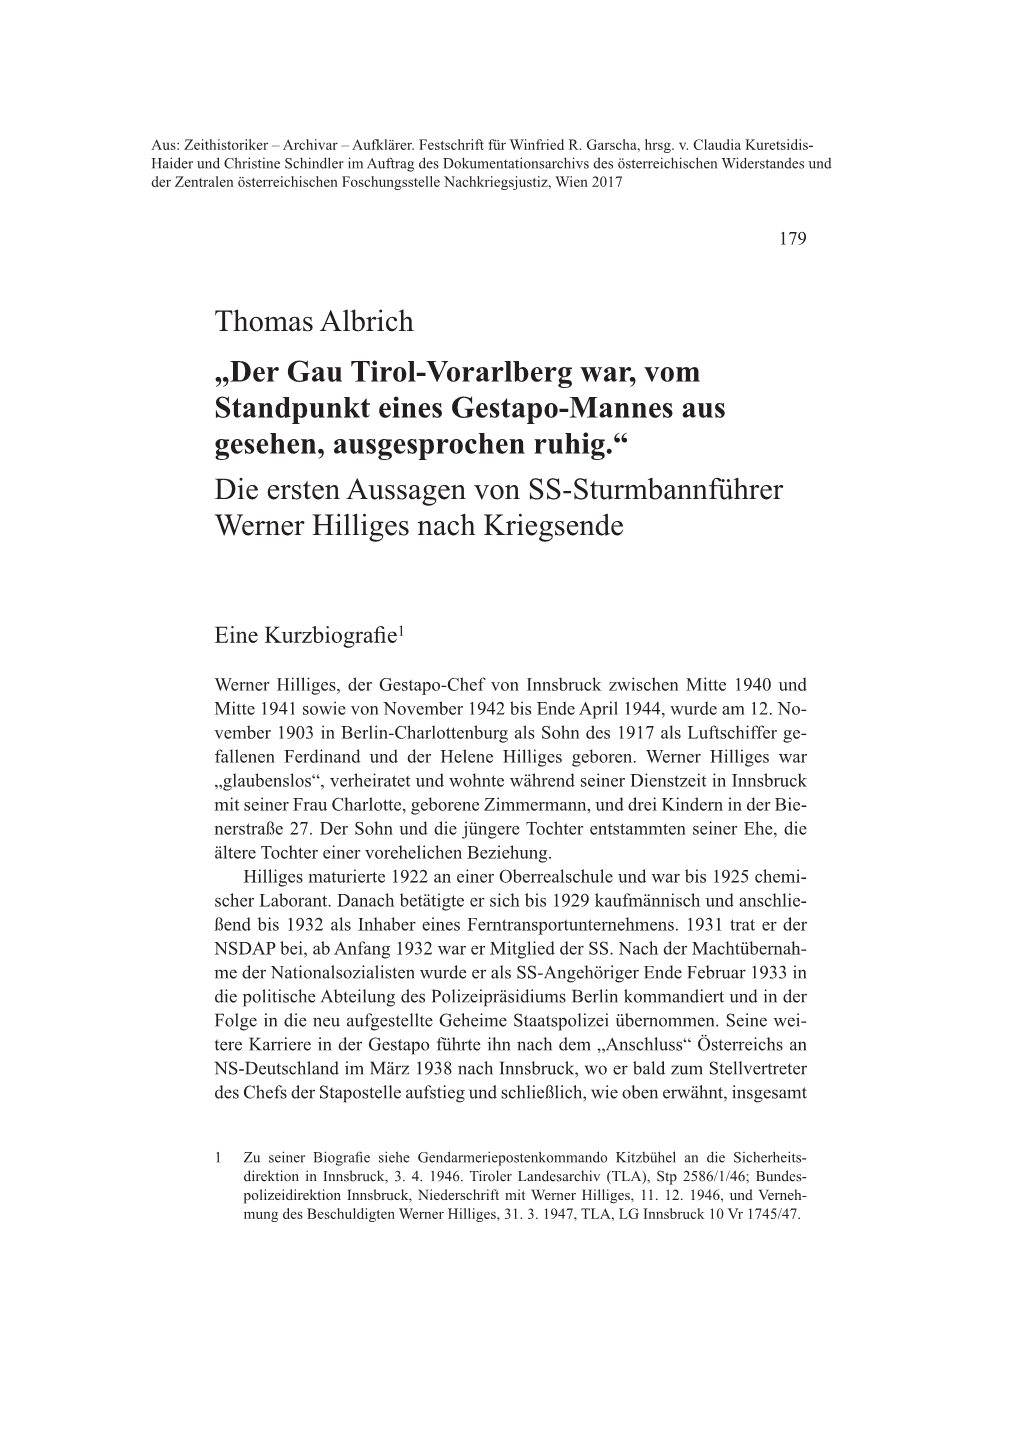 Thomas Albrich „Der Gau Tirol-Vorarlberg War, Vom Standpunkt Eines Gestapo-Mannes Aus Gesehen, Ausgesprochen Ruhig.“